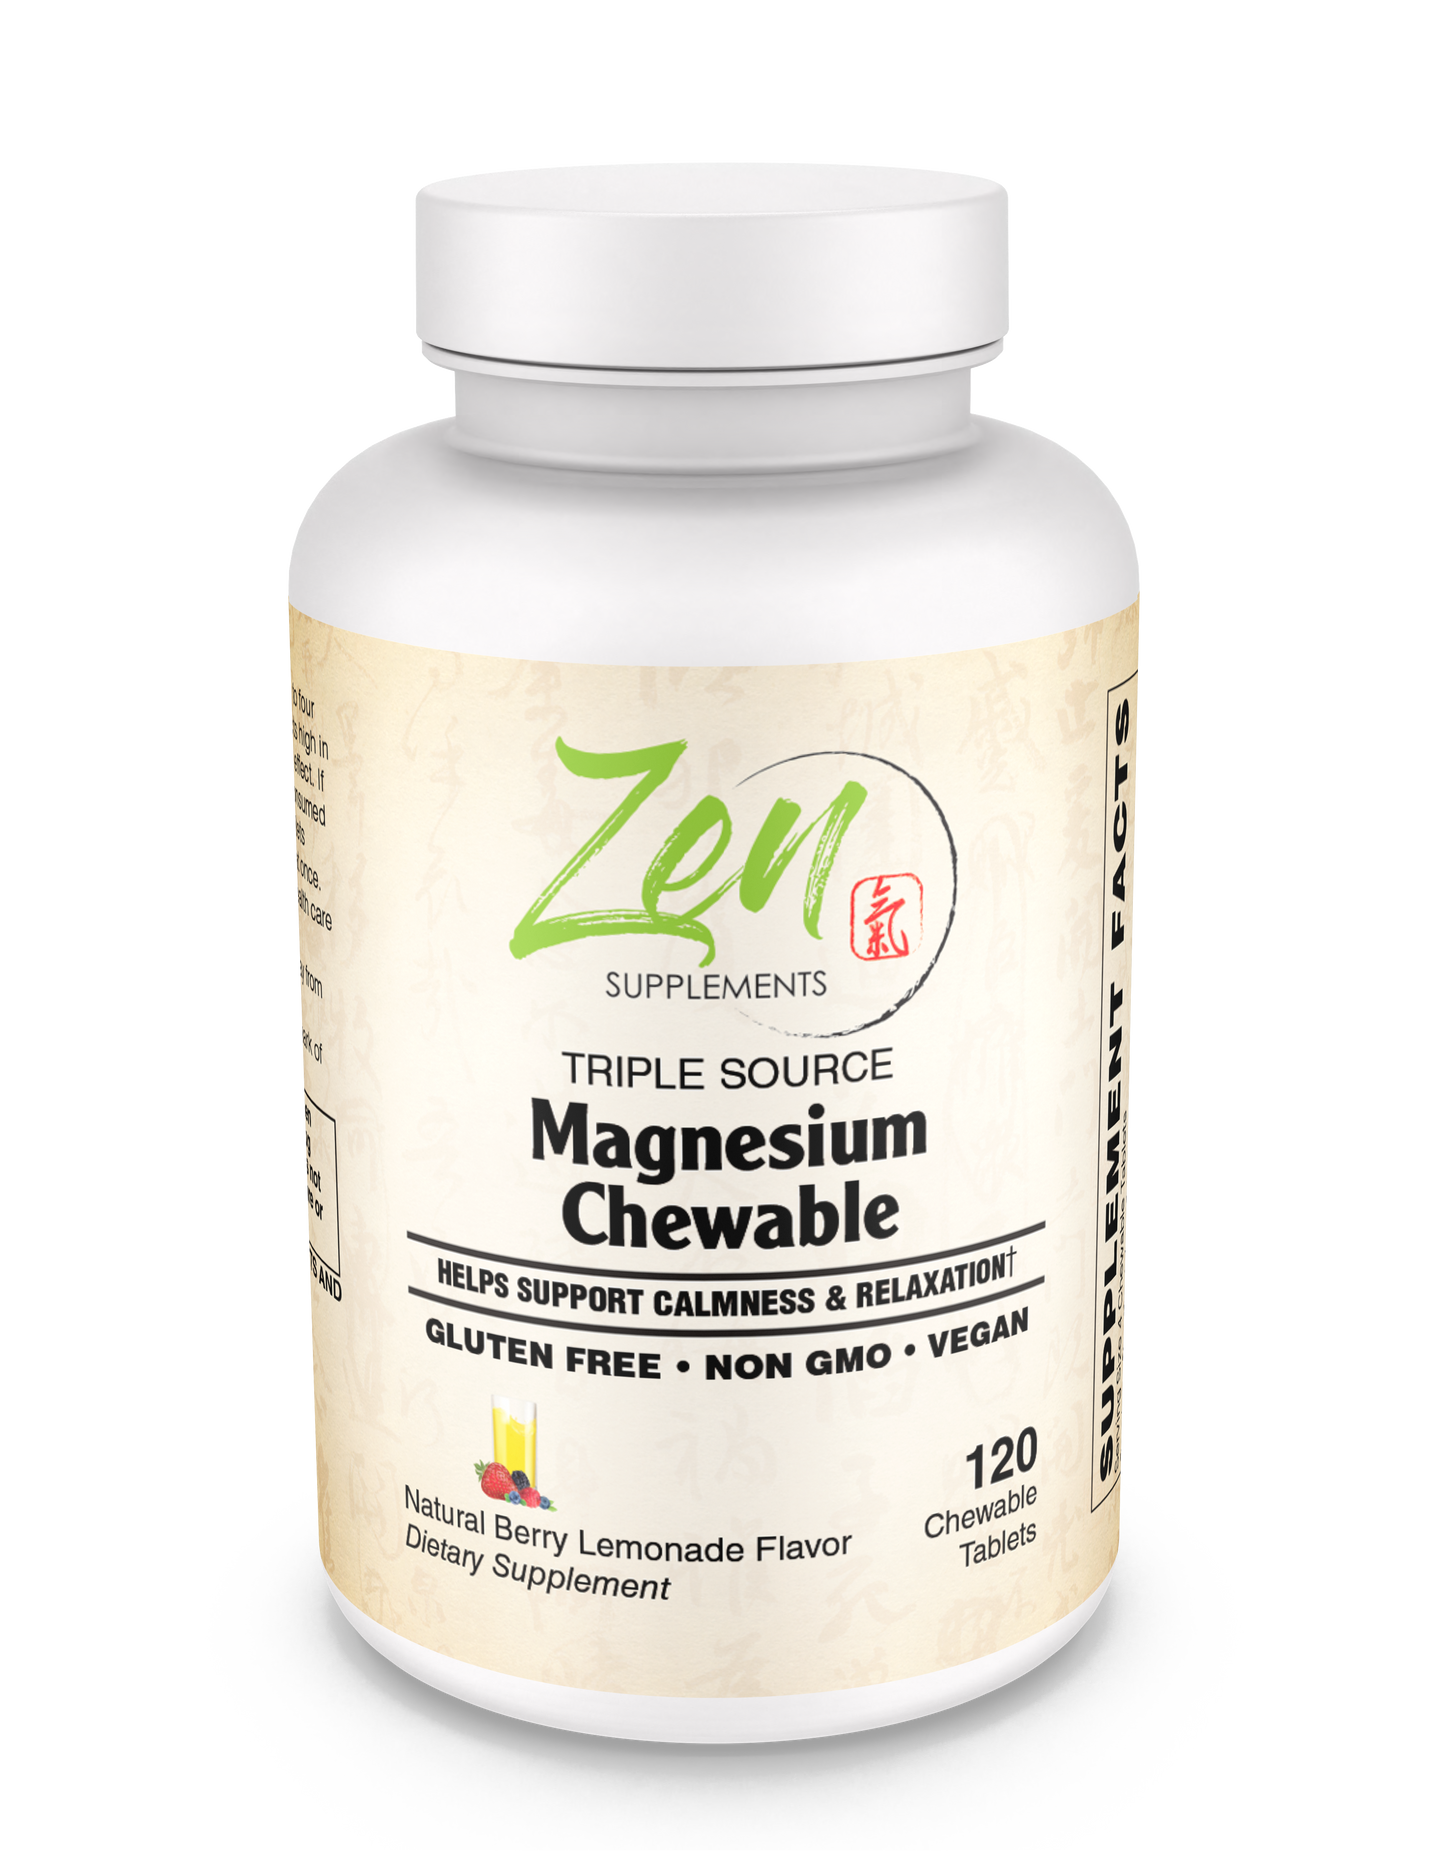 Triple Source Magnesium Supplement Chewable 120 Tablet - Berry & Lemon Flavor